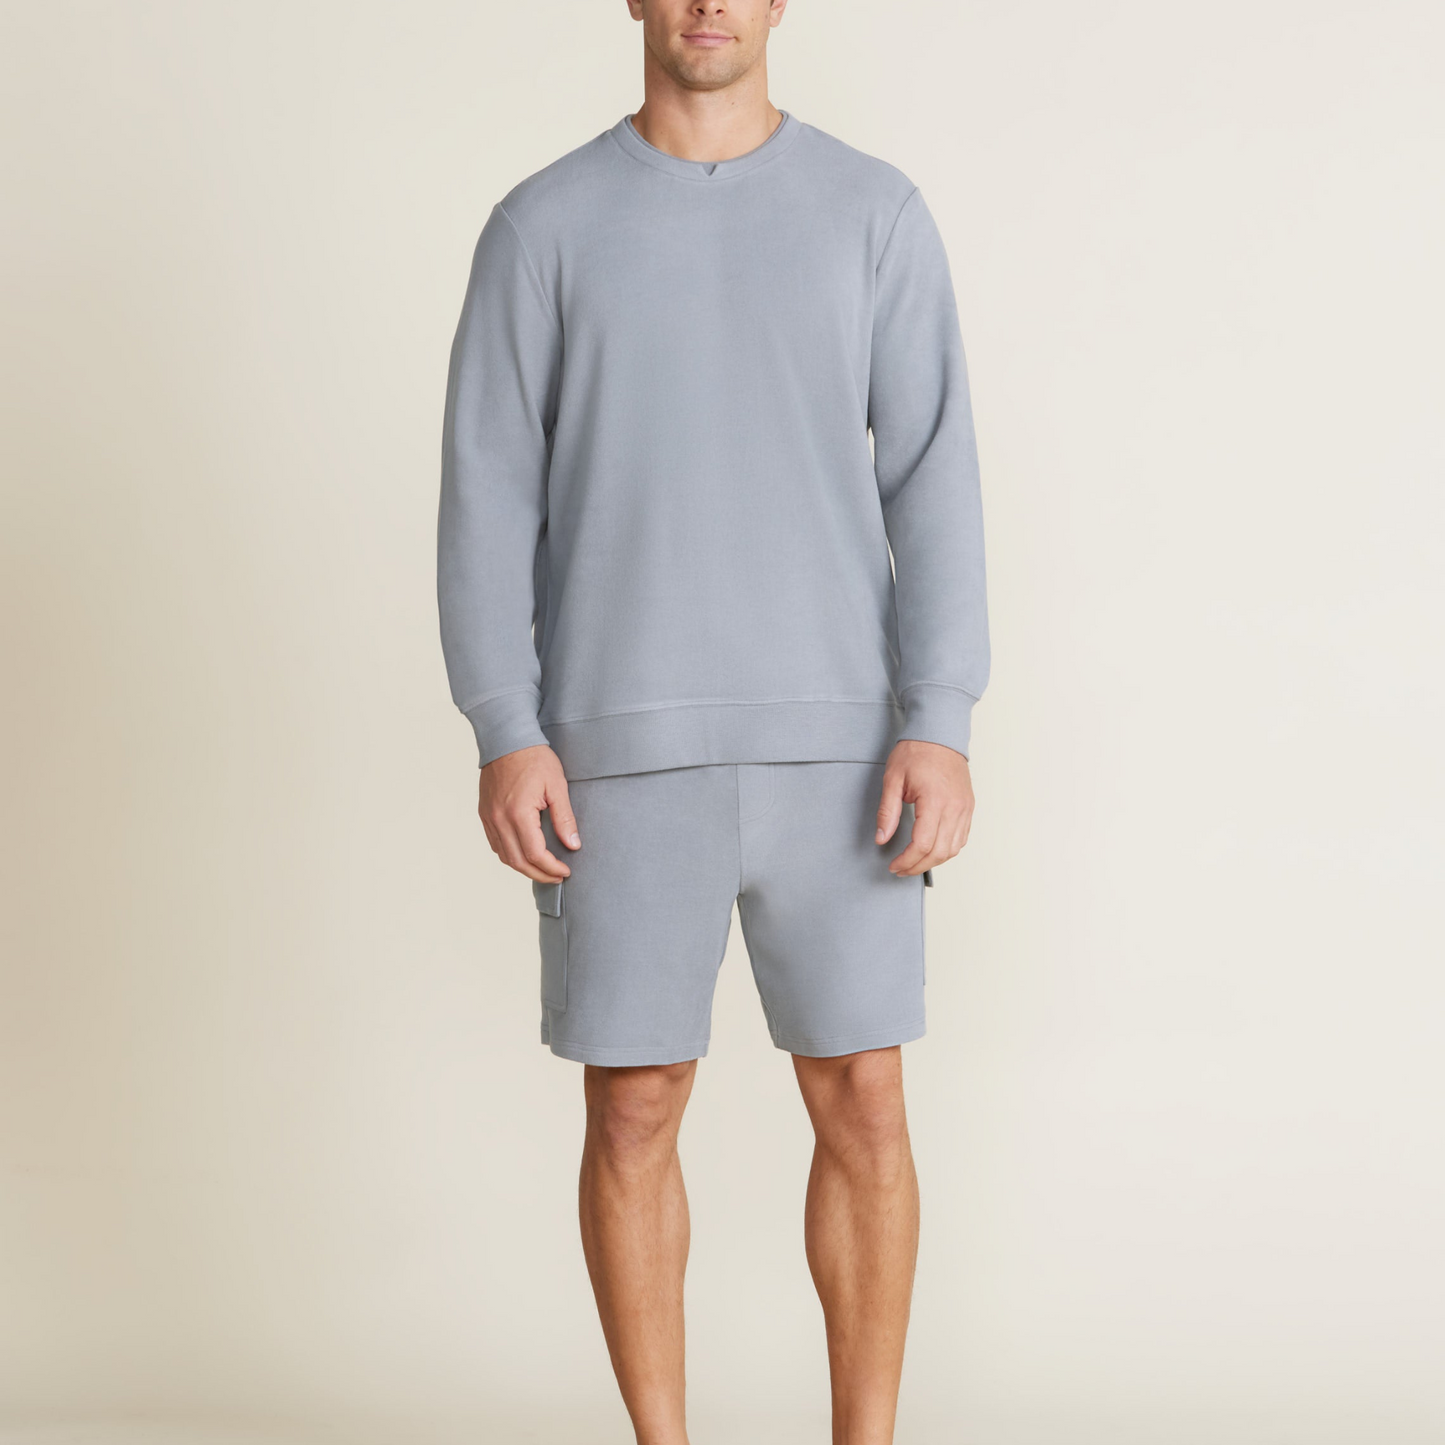 Malibu Collection Men's Brushed Fleece Split Neck Pullover